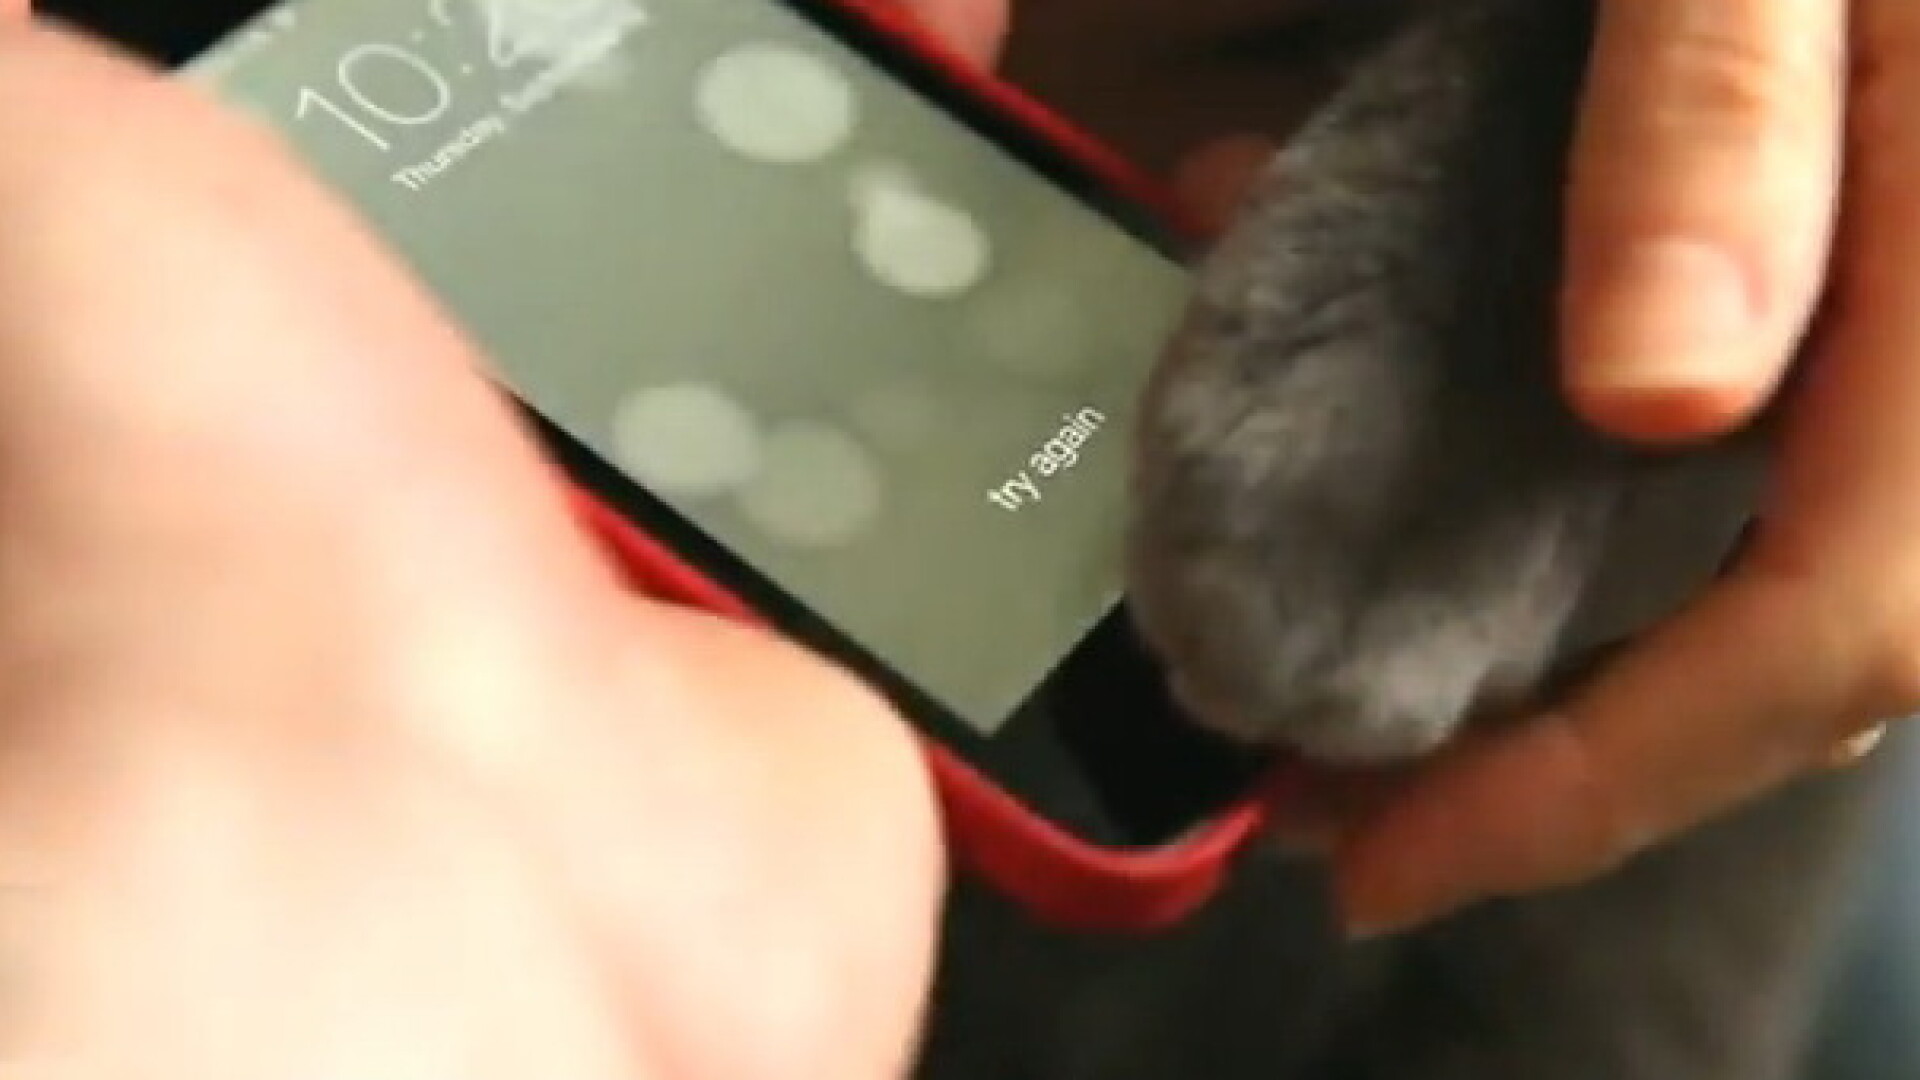 iPhone 5S pisica